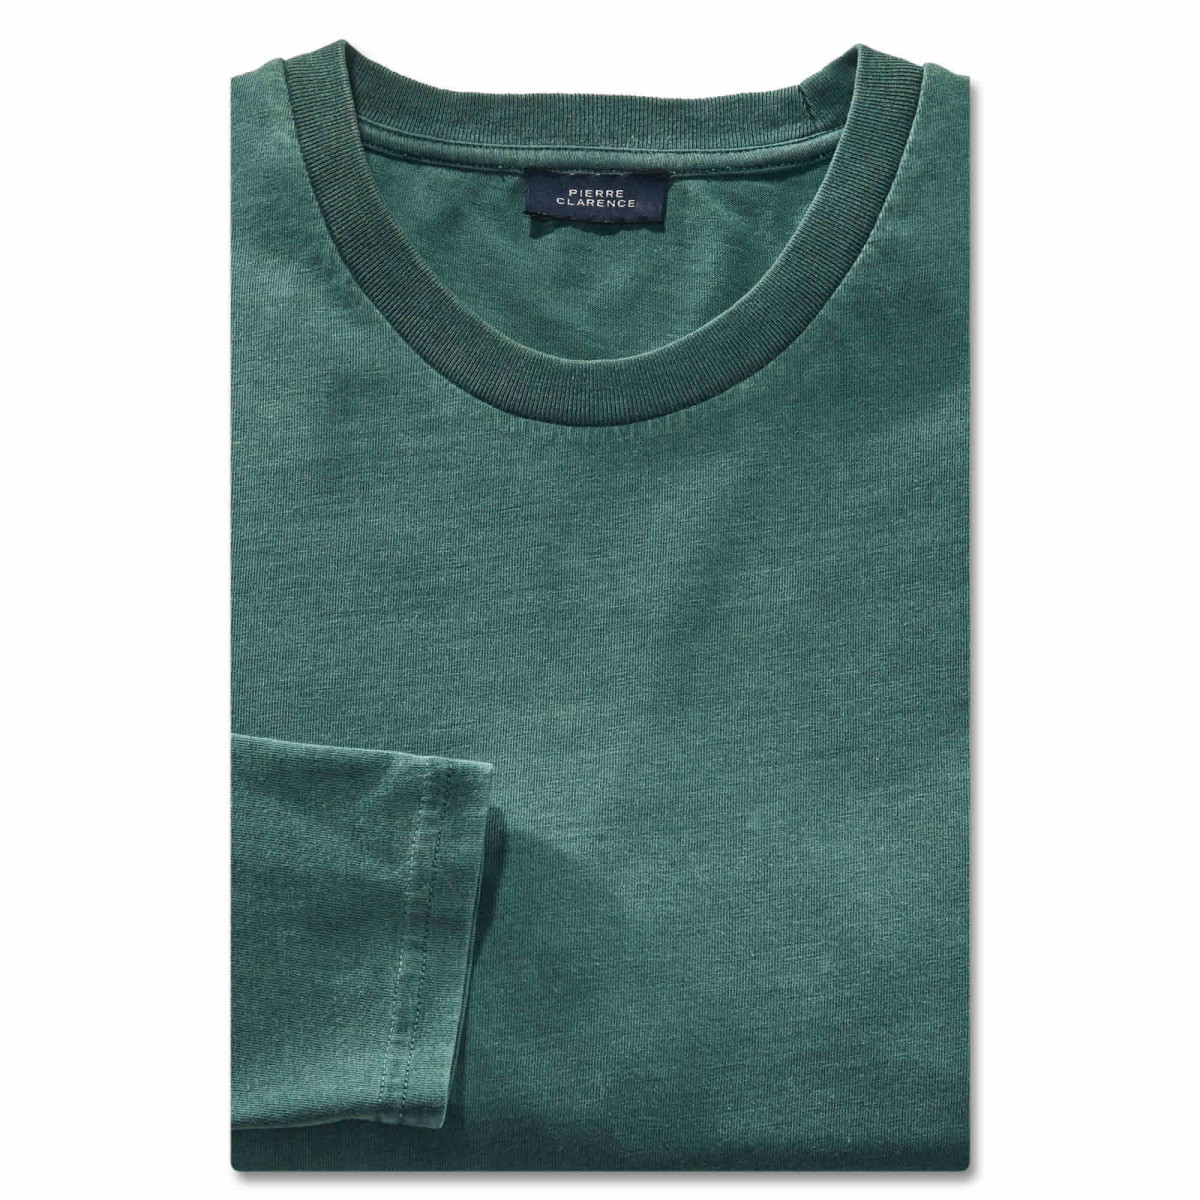 Tee-shirt coton 104/108 (L) Vert